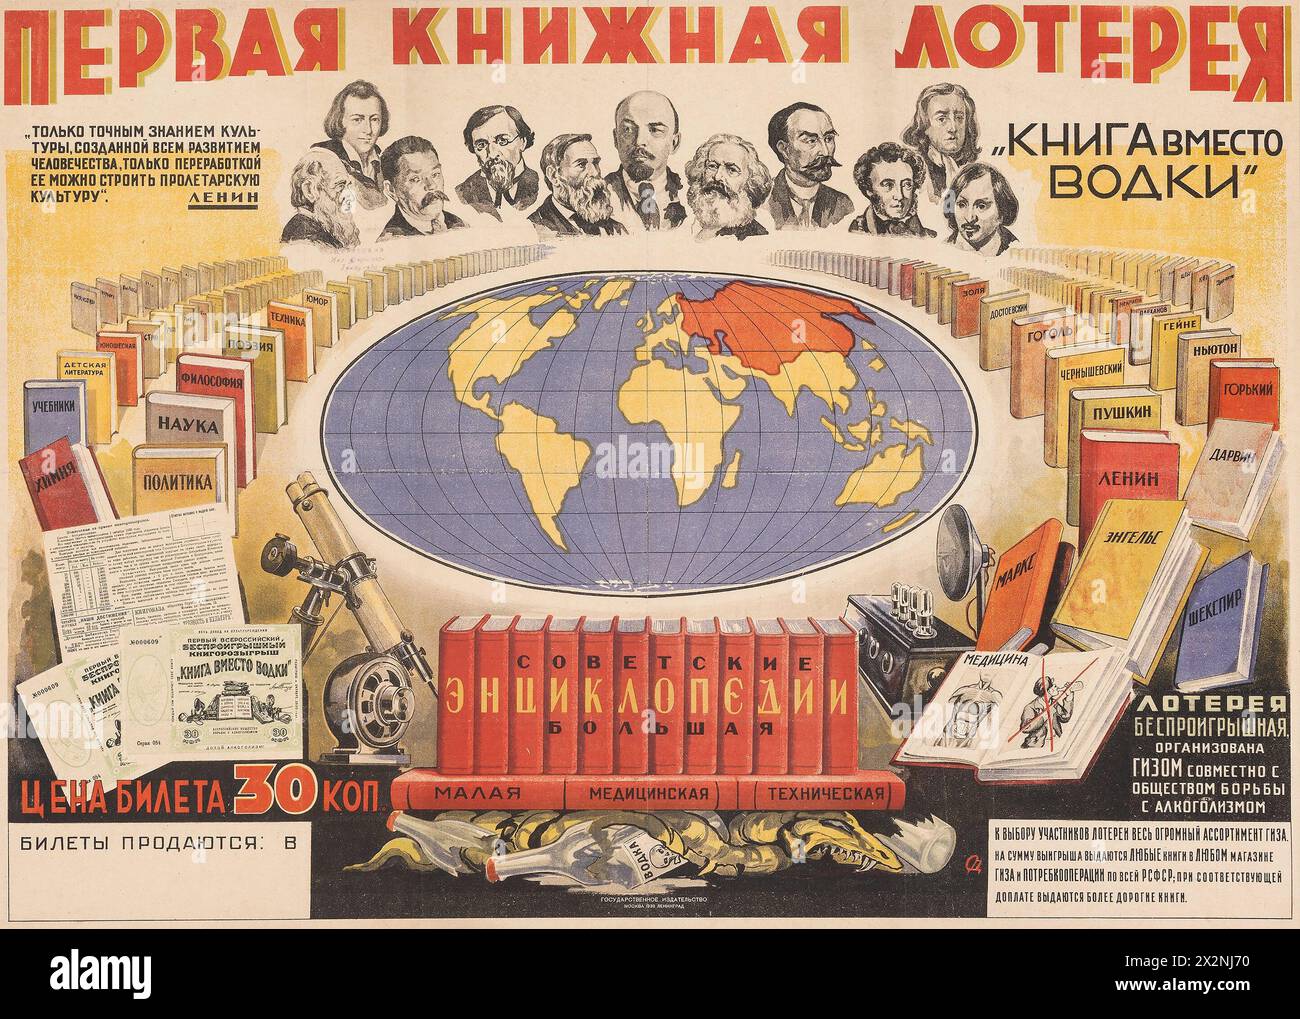 Affiche russe vintage - première loterie de livre - Livre au lieu de vodka (1930) affiche publicitaire russe. Banque D'Images